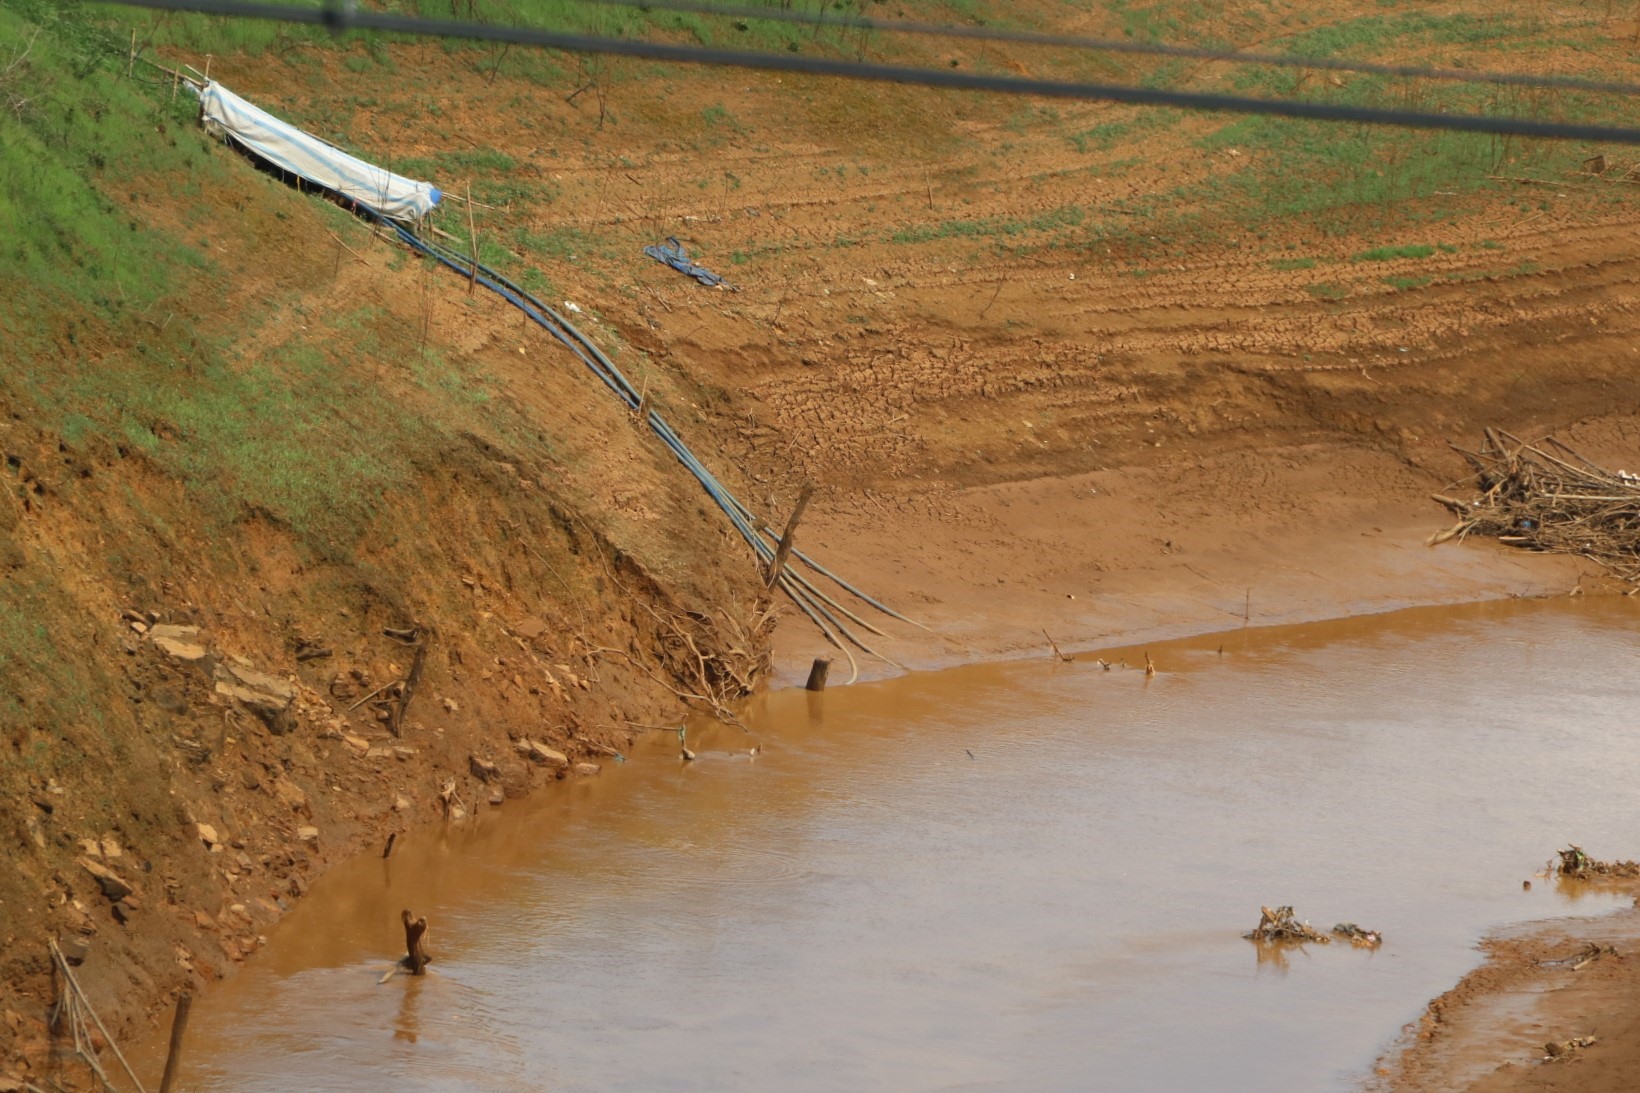 Hồ cạn nước gây khó khăn cho người dân sản xuất nông nghiệp, không có nước tưới cho cây trồng. Các ống hút nước đặt sâu xuống dưới các dòng chảy vất vả lấy nước tưới.